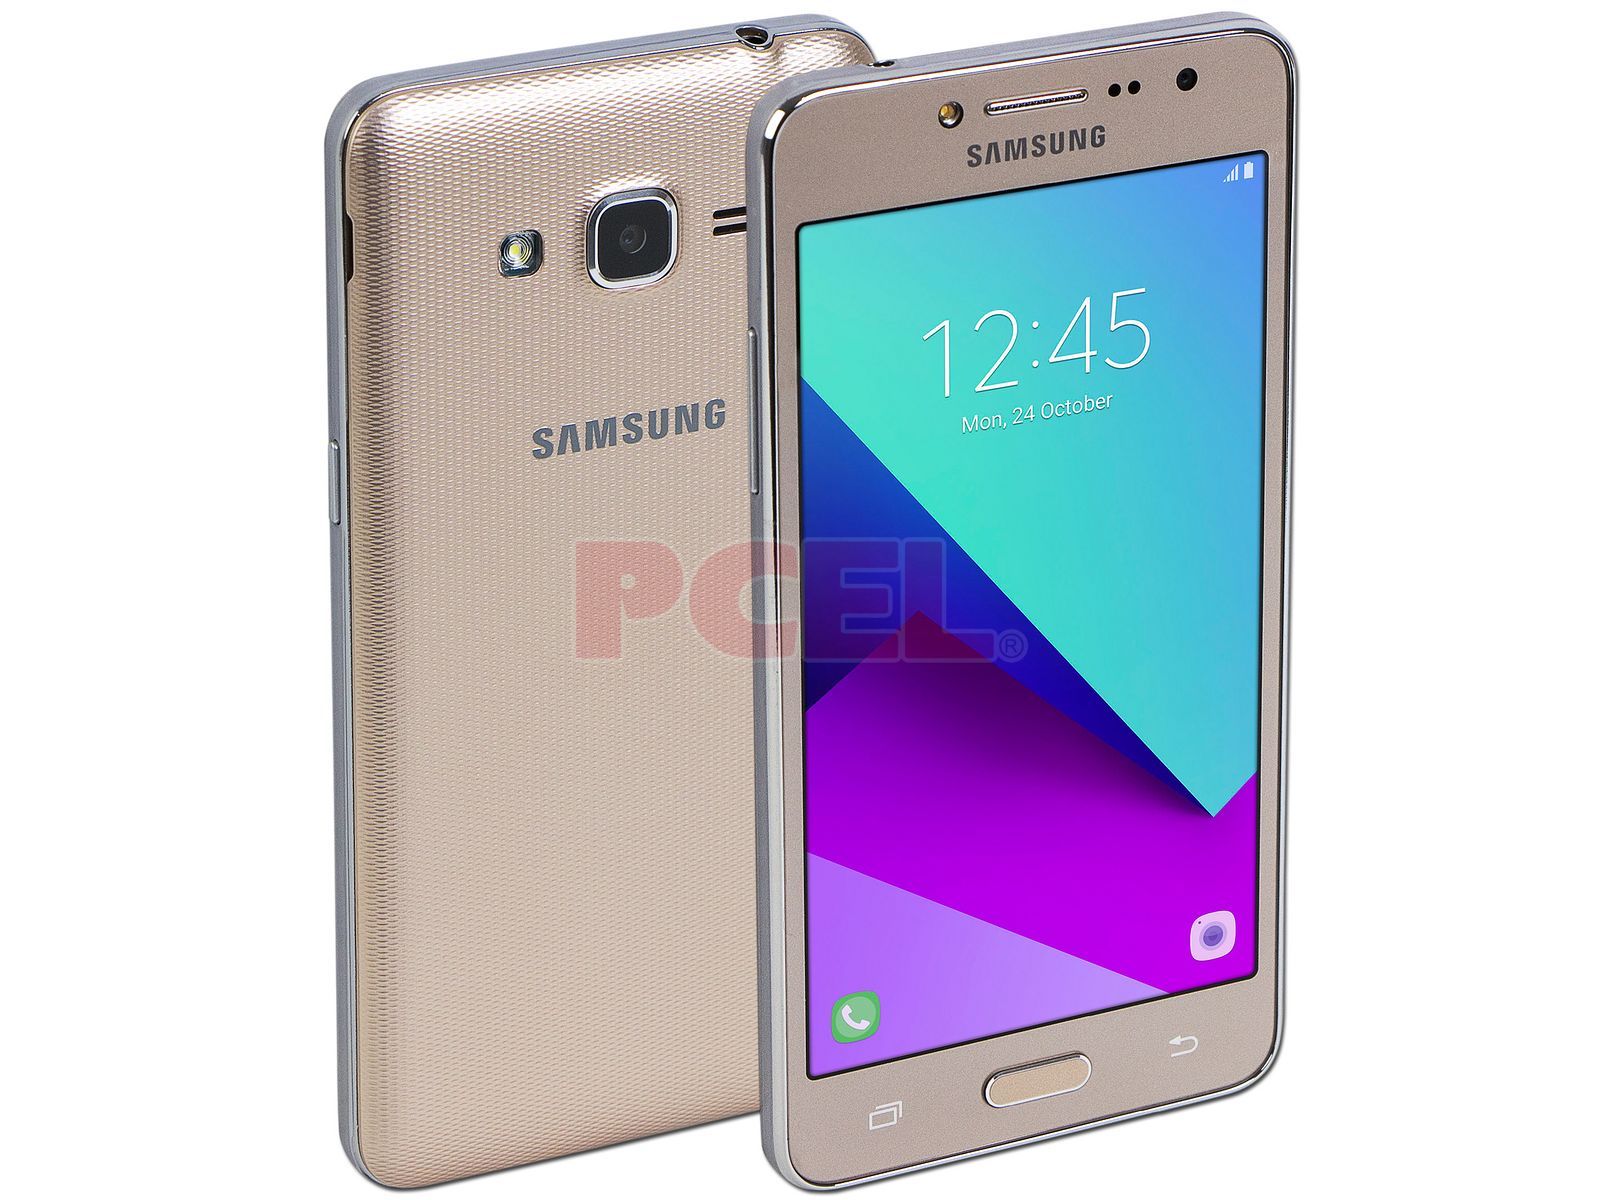 Smartphone Samsung Galaxy Grand Prime +: Procesador Quad Core ( GHz),  Memoria RAM de , Almacenamiento de 8GB (expandible con microSD),  Pantalla 